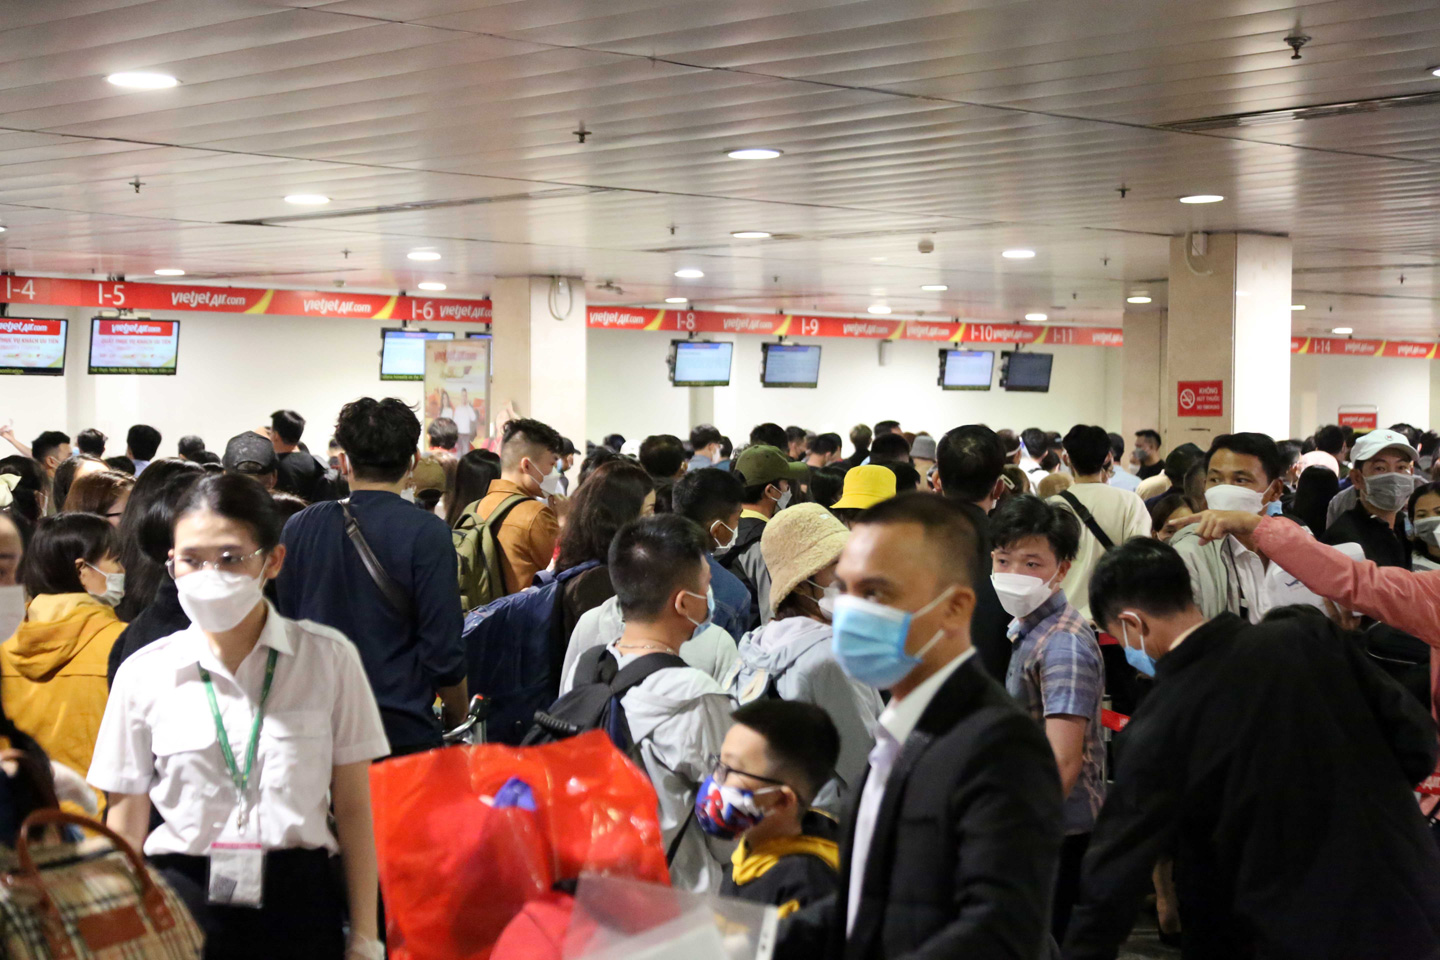 Ảnh: Sân bay Tân Sơn Nhất nghẹt người, khách nằm dài giữa nhà ga cả đêm chờ chuyến bay - 11